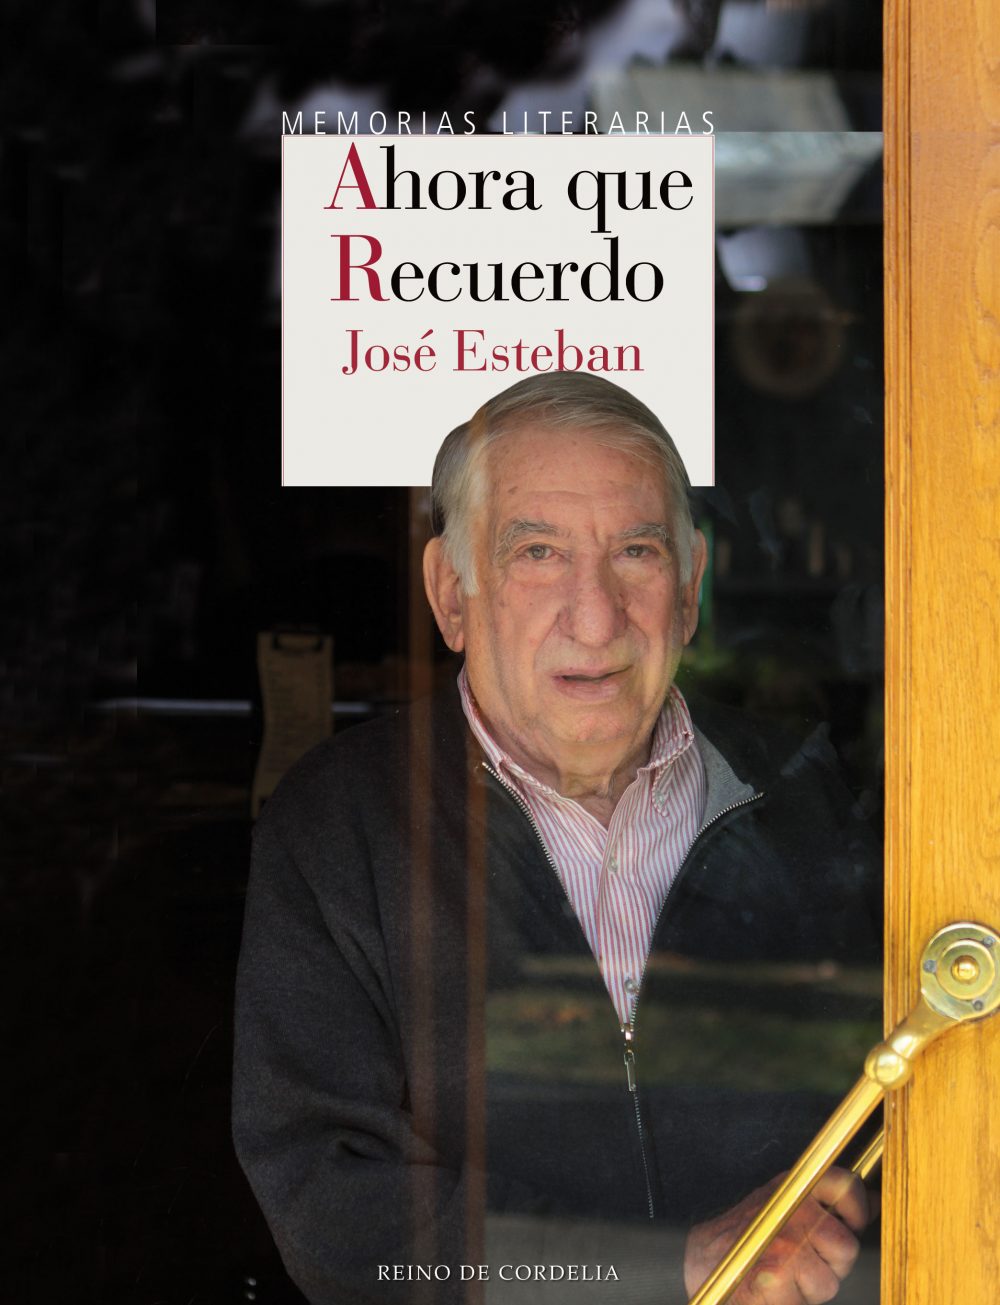 José Esteban y Rafael Borràs: memorias culturales